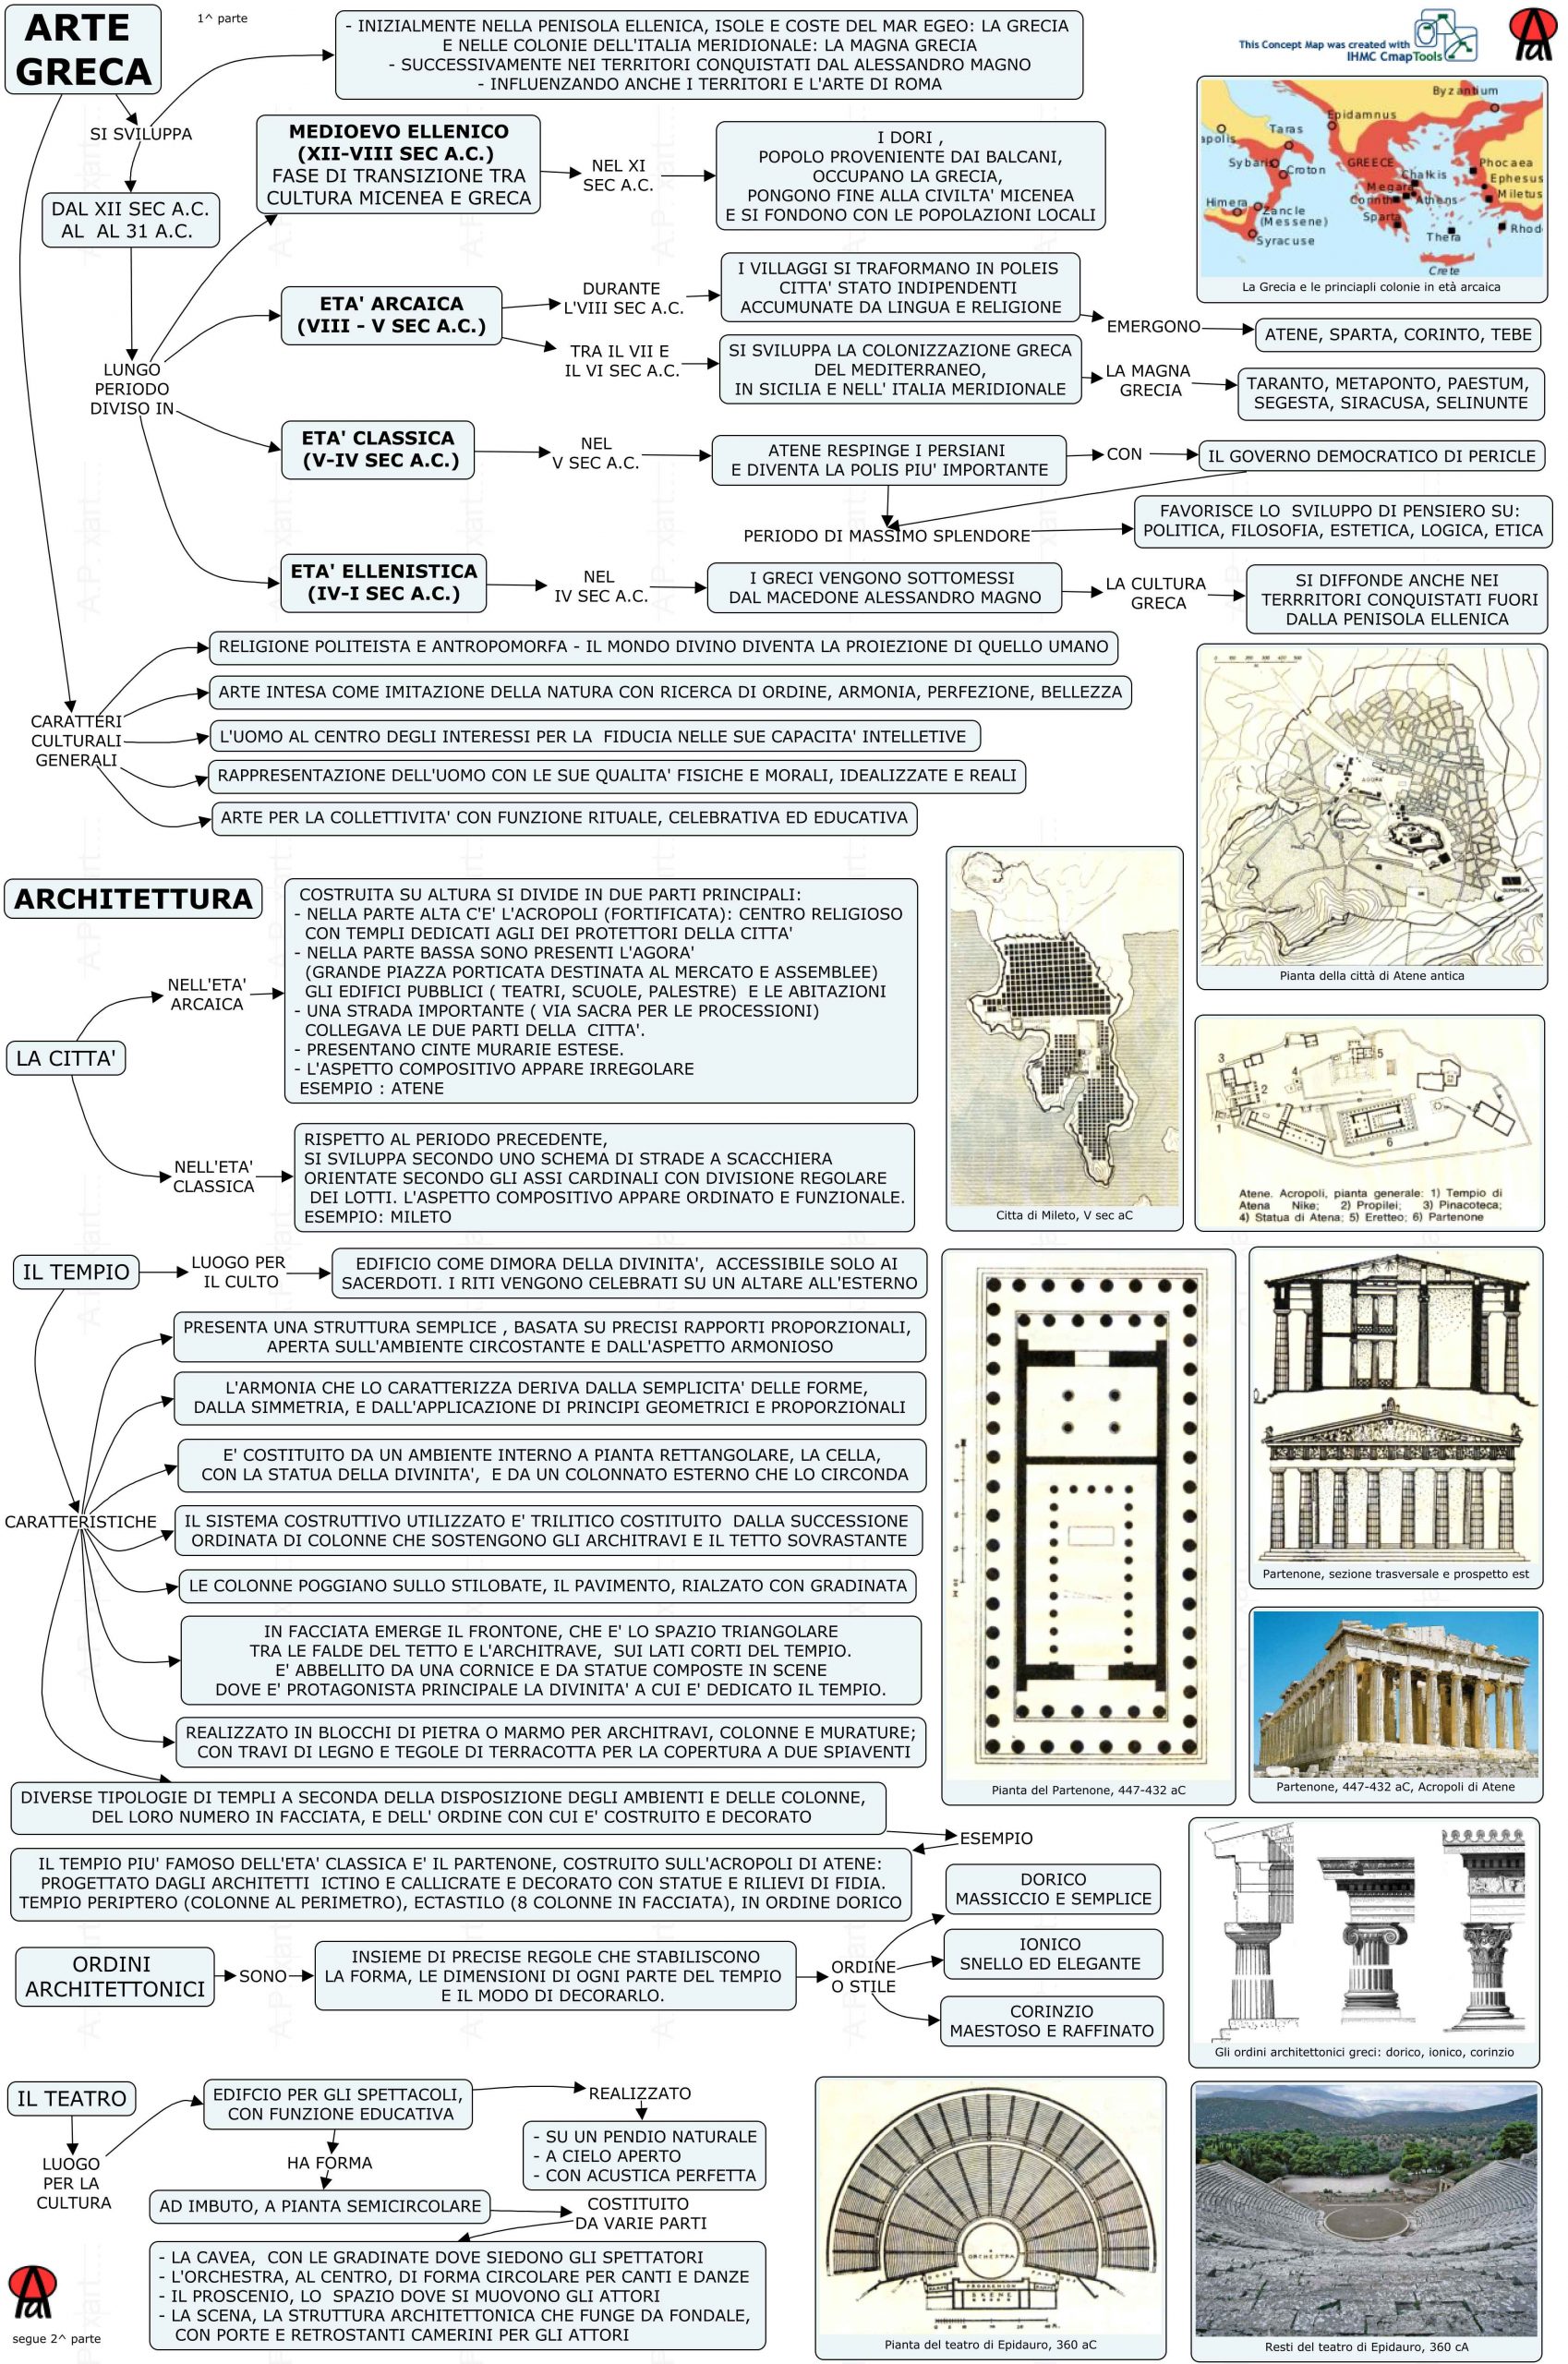 Mappa concettuale: arte greca - parte prima ( contesto e architettura).